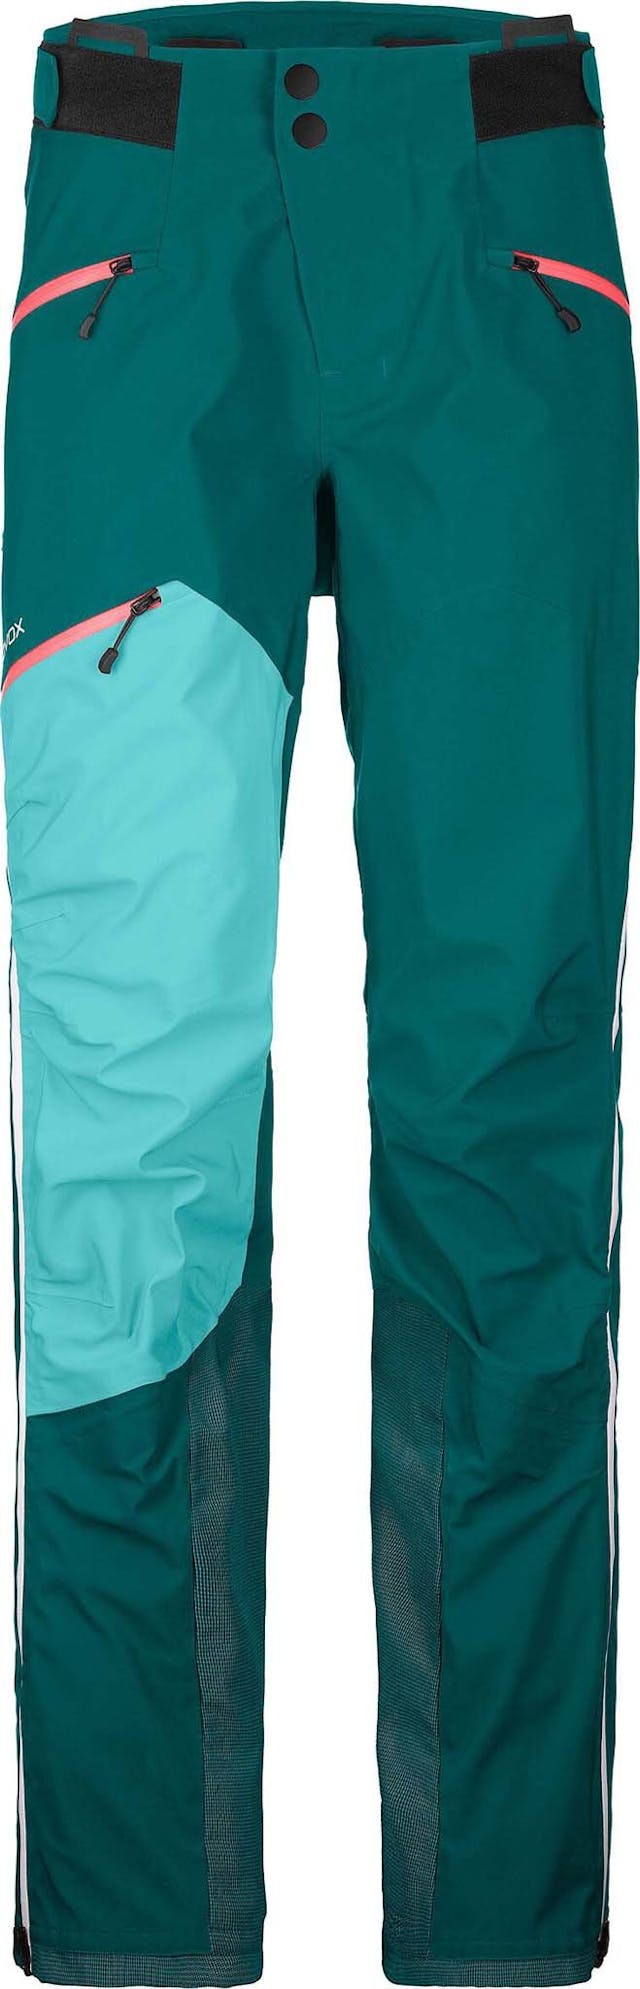 Product image for Westalpen 3L Pants - Women's